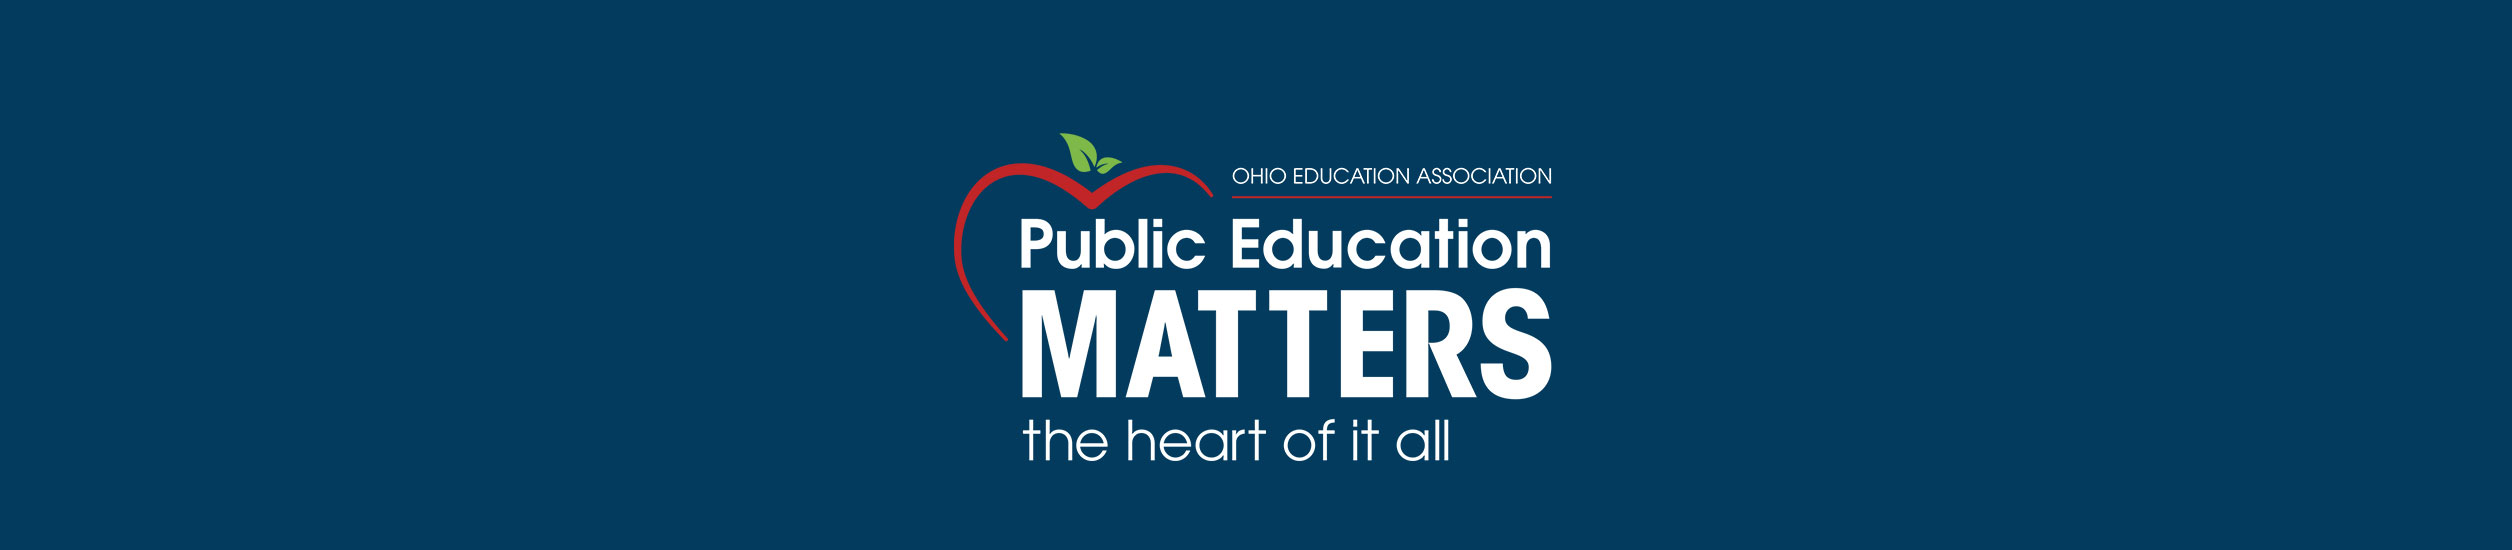 image: public education matters